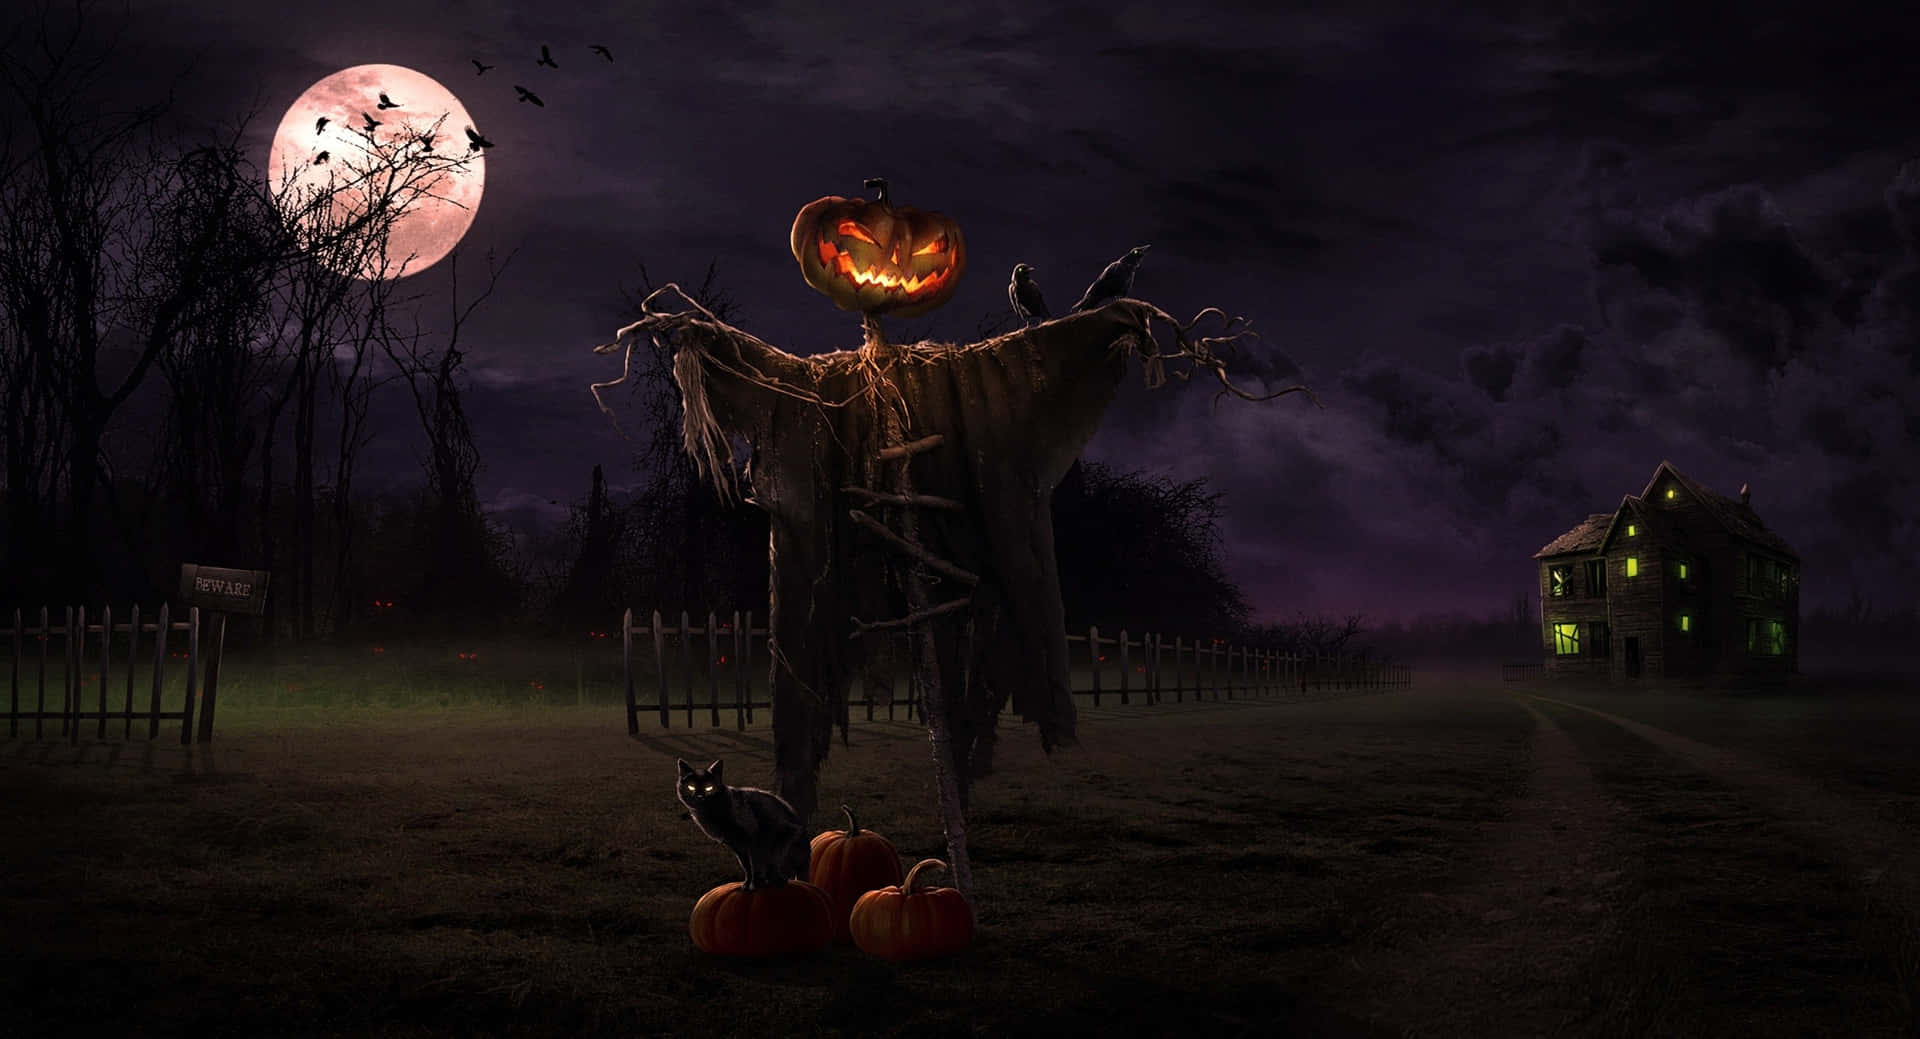 Imagende Espantapájaros Terrorífico Para Halloween.